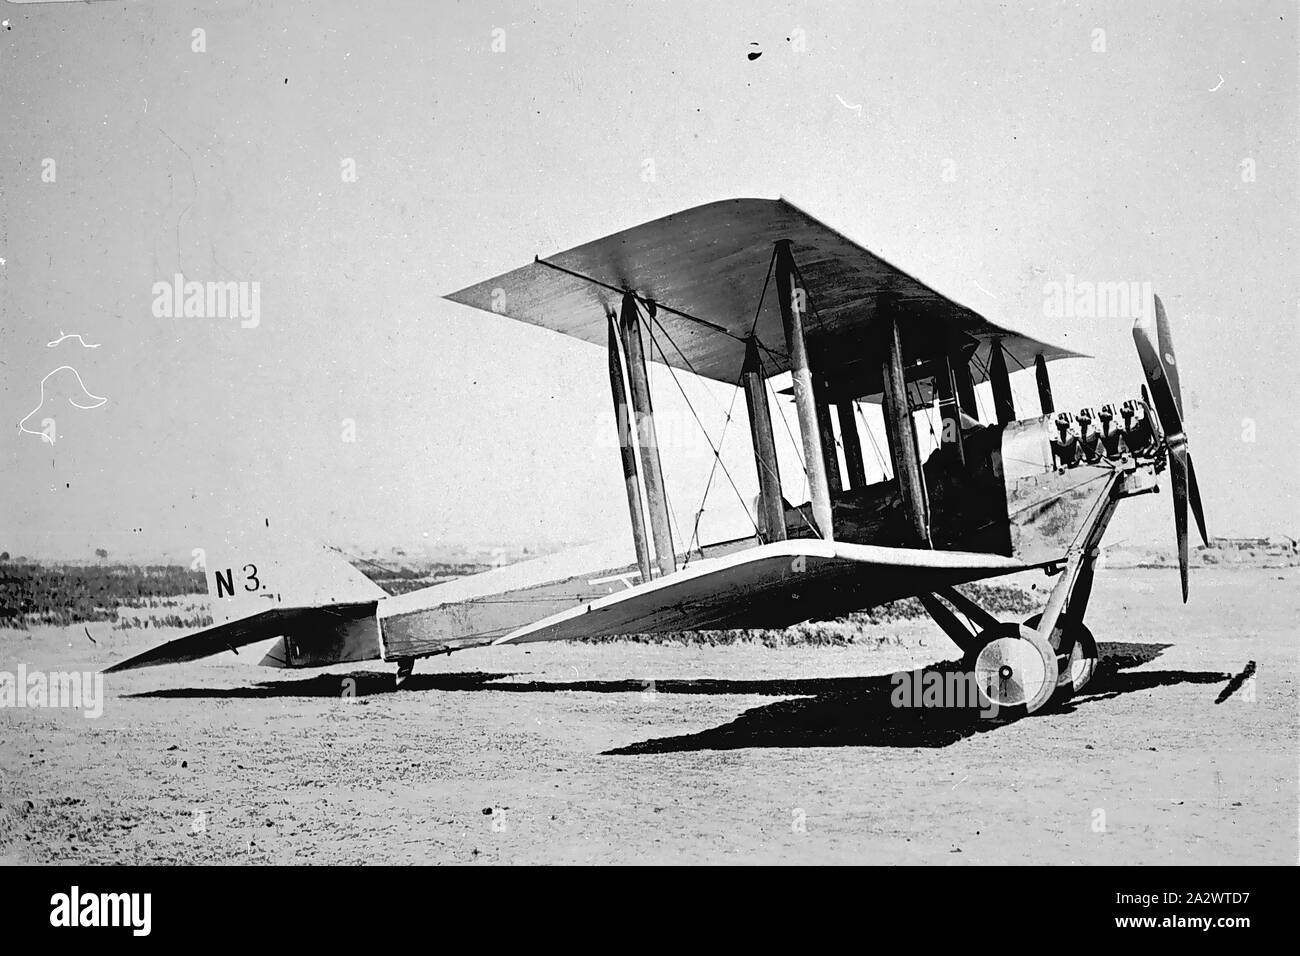 Negativo - Airco DH.6 Biplano, Victoria, circa 1920, un Airco DH.6 un biplano recanti la marcatura "N3 Foto Stock